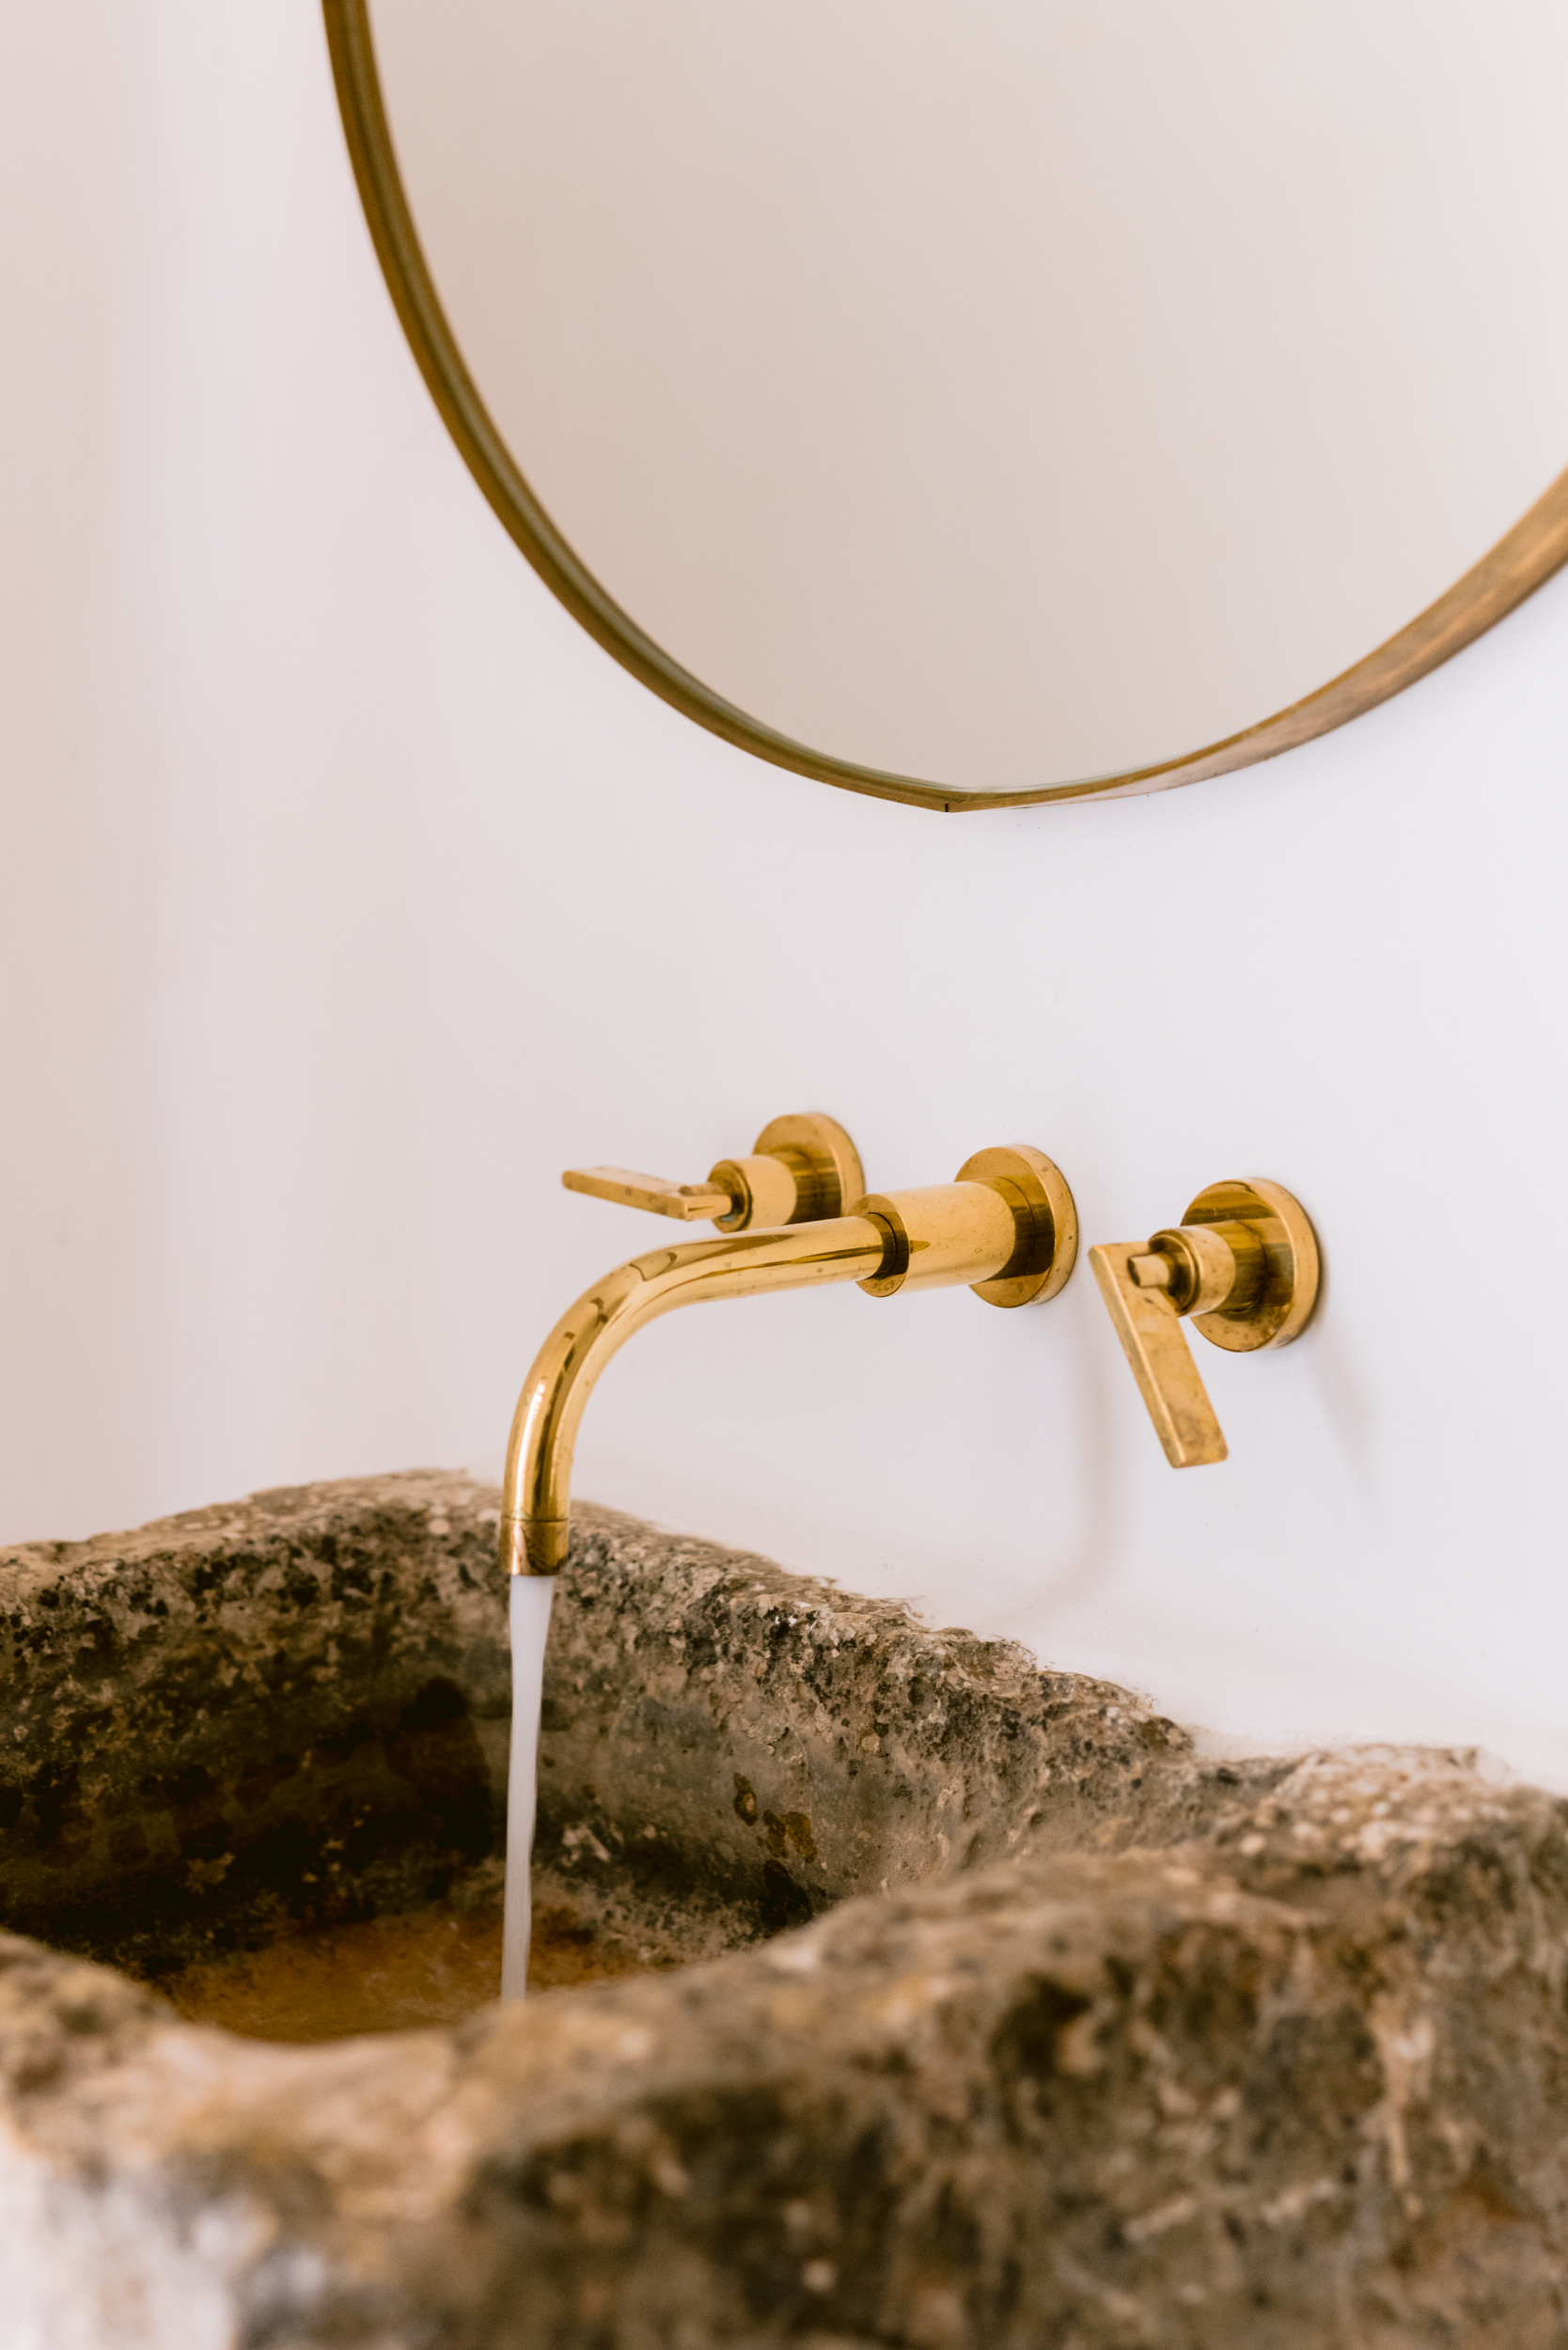 Brassware of a rustic bathroom in a luxury villa in Ibiza